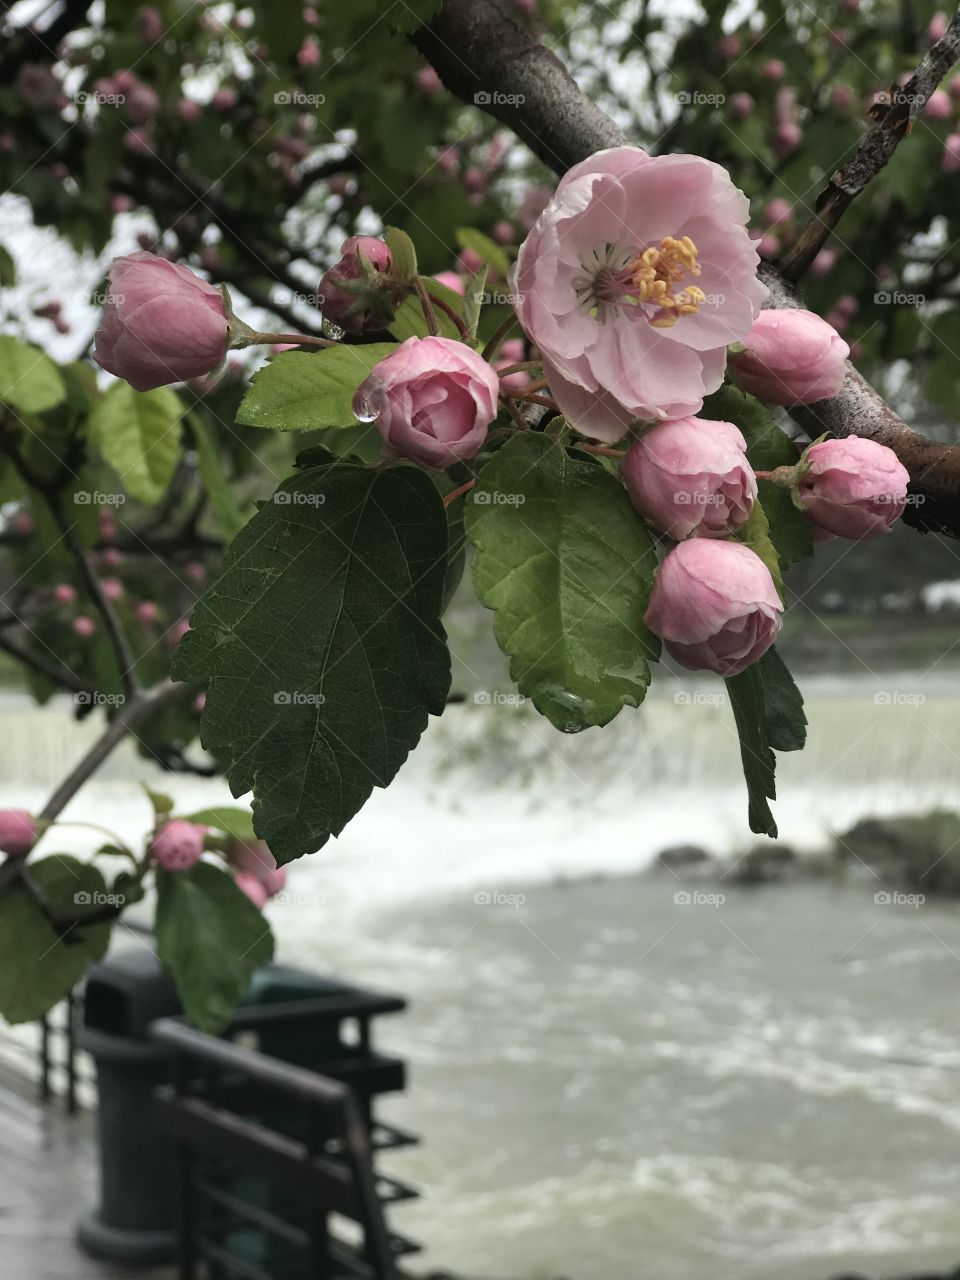 Sweet aroma and rushing water at Idaho Falls